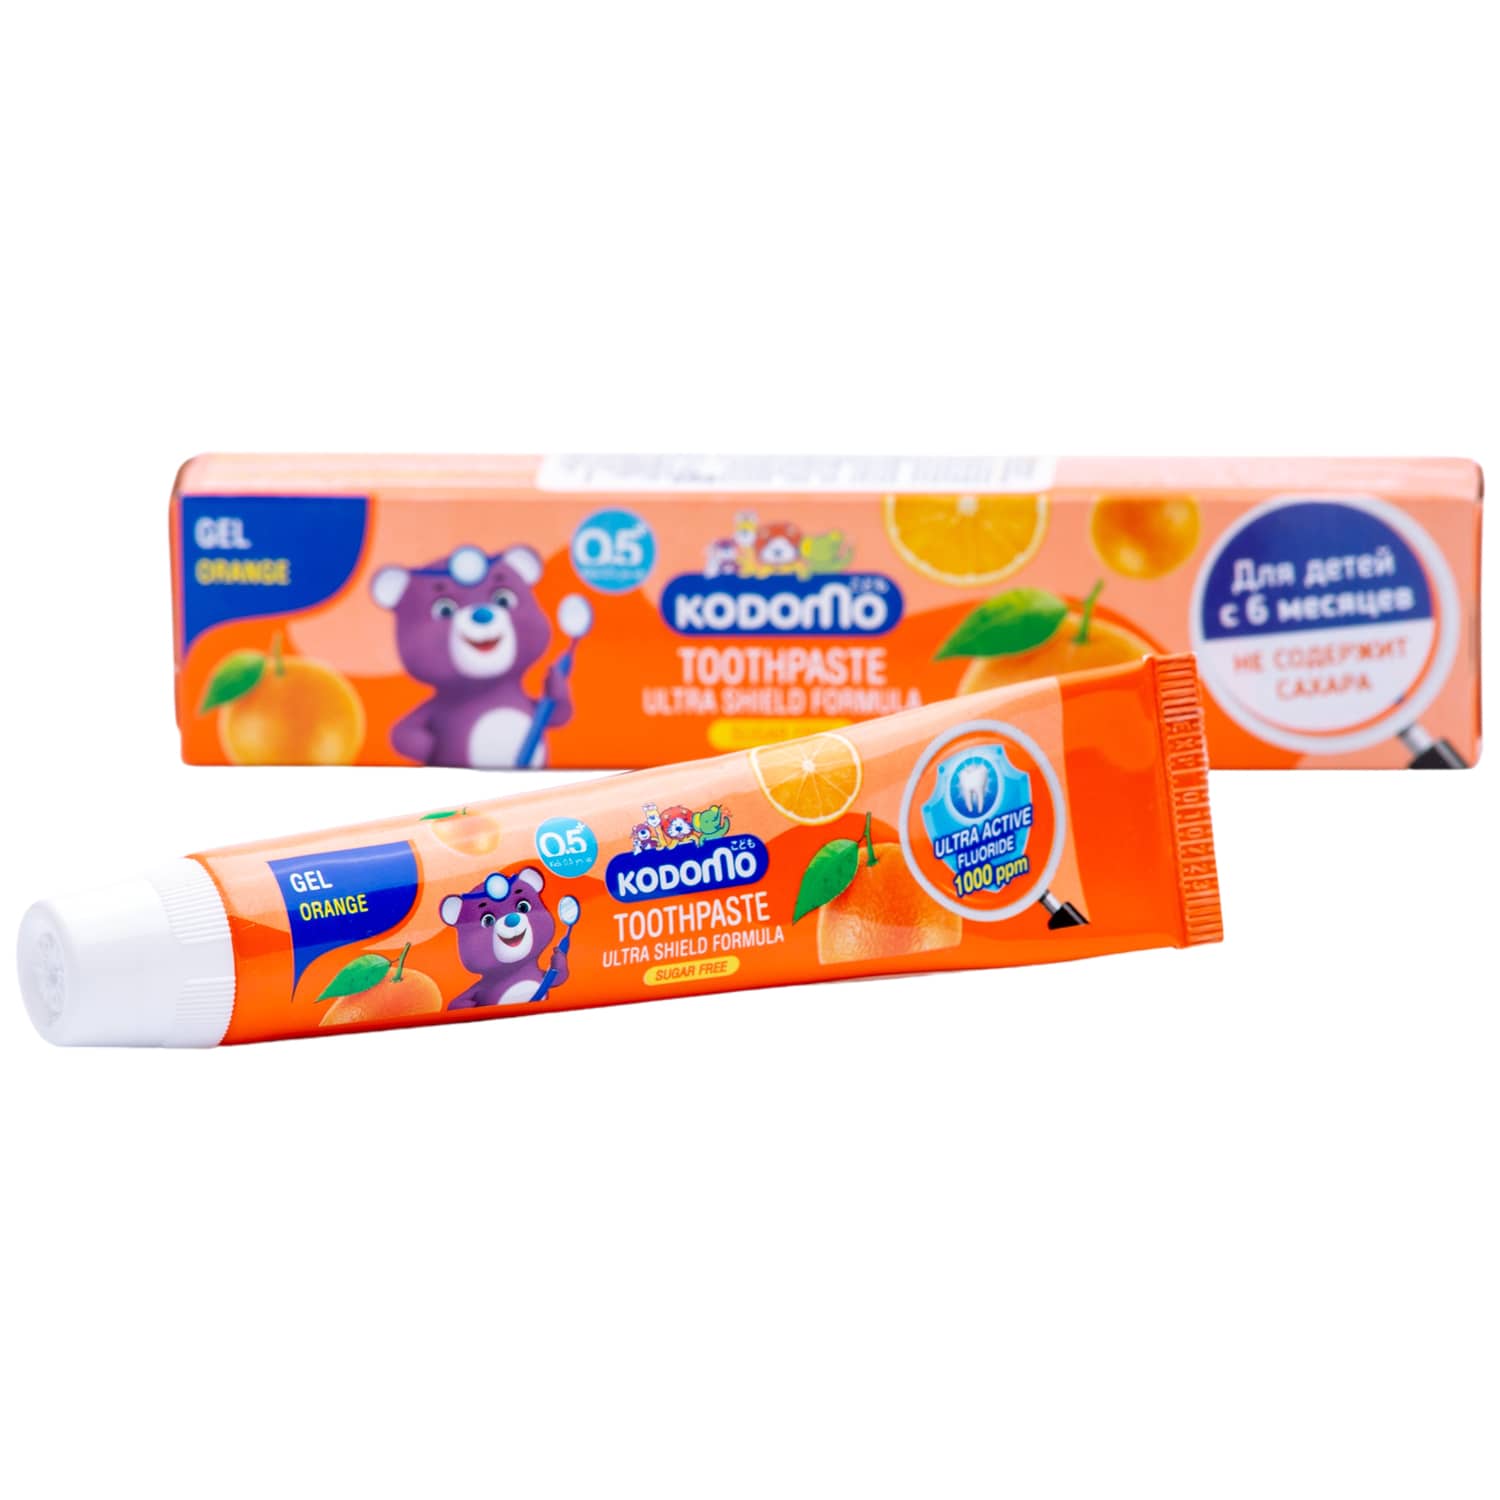 Lion Thailand Зубная гелевая паста для детей с 6 месяцев с ароматом апельсина, 40 г (Lion Thailand, Kodomo)